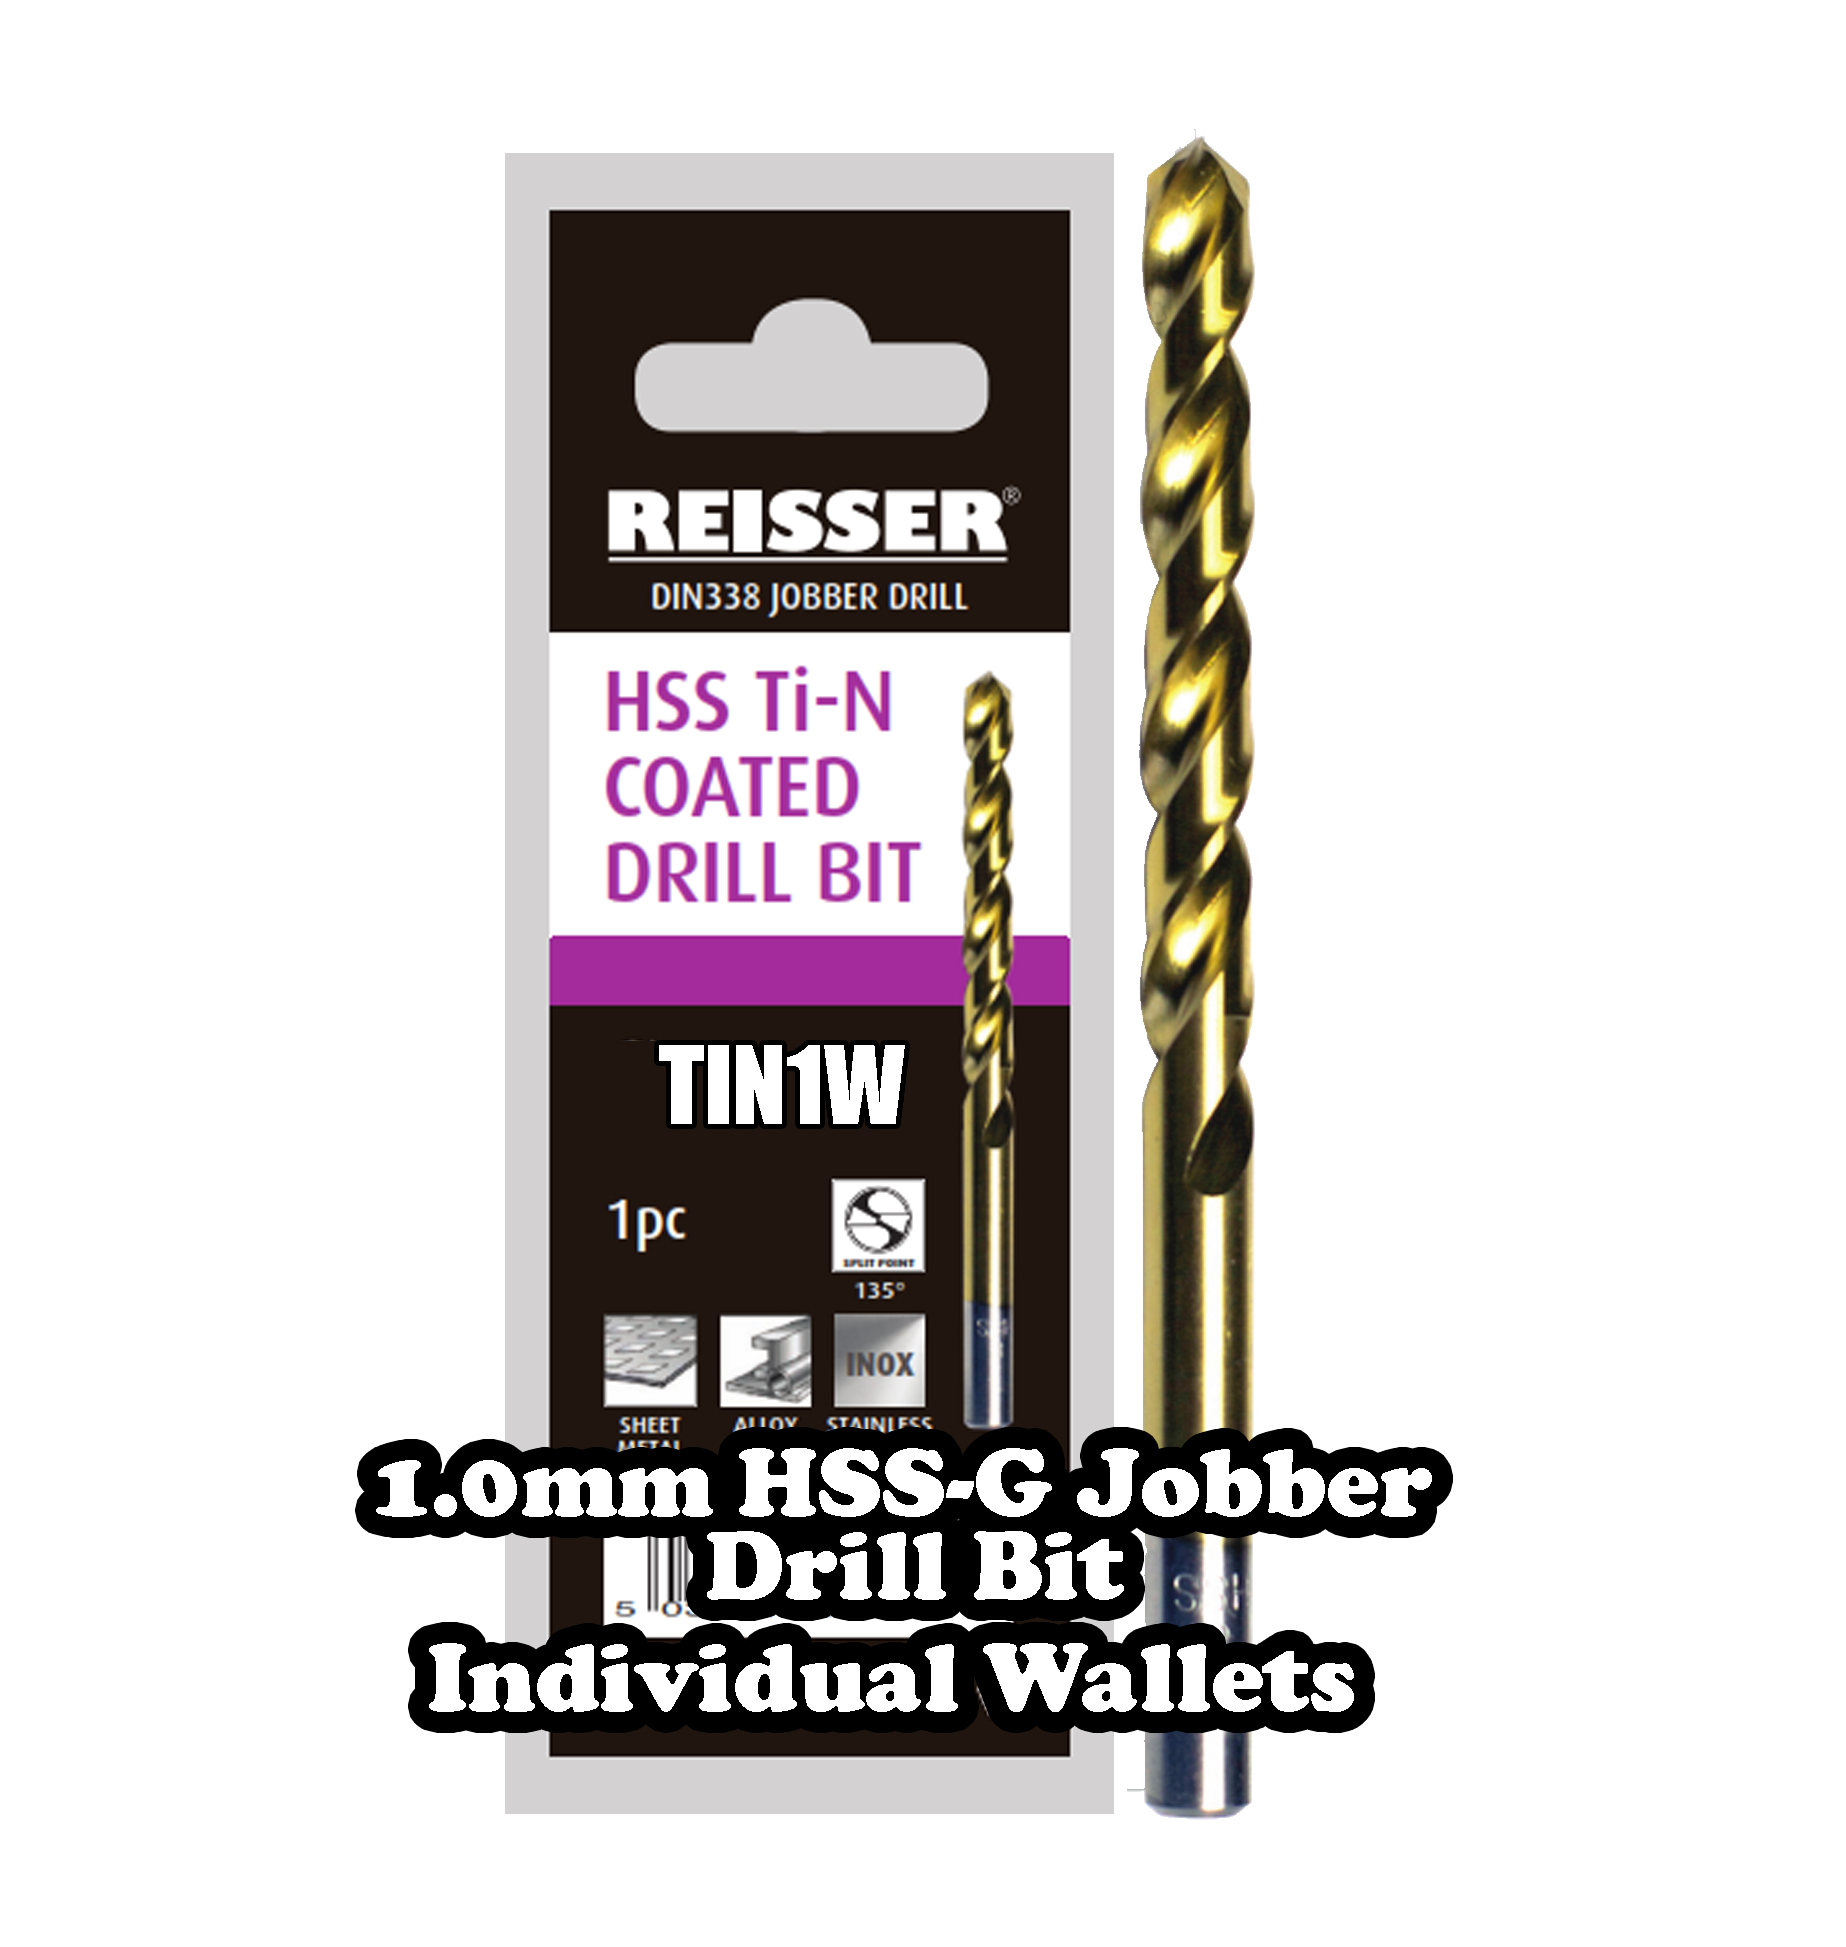 1.0mm HSS Jobber Drill Bit ( SINGLE WALLET )